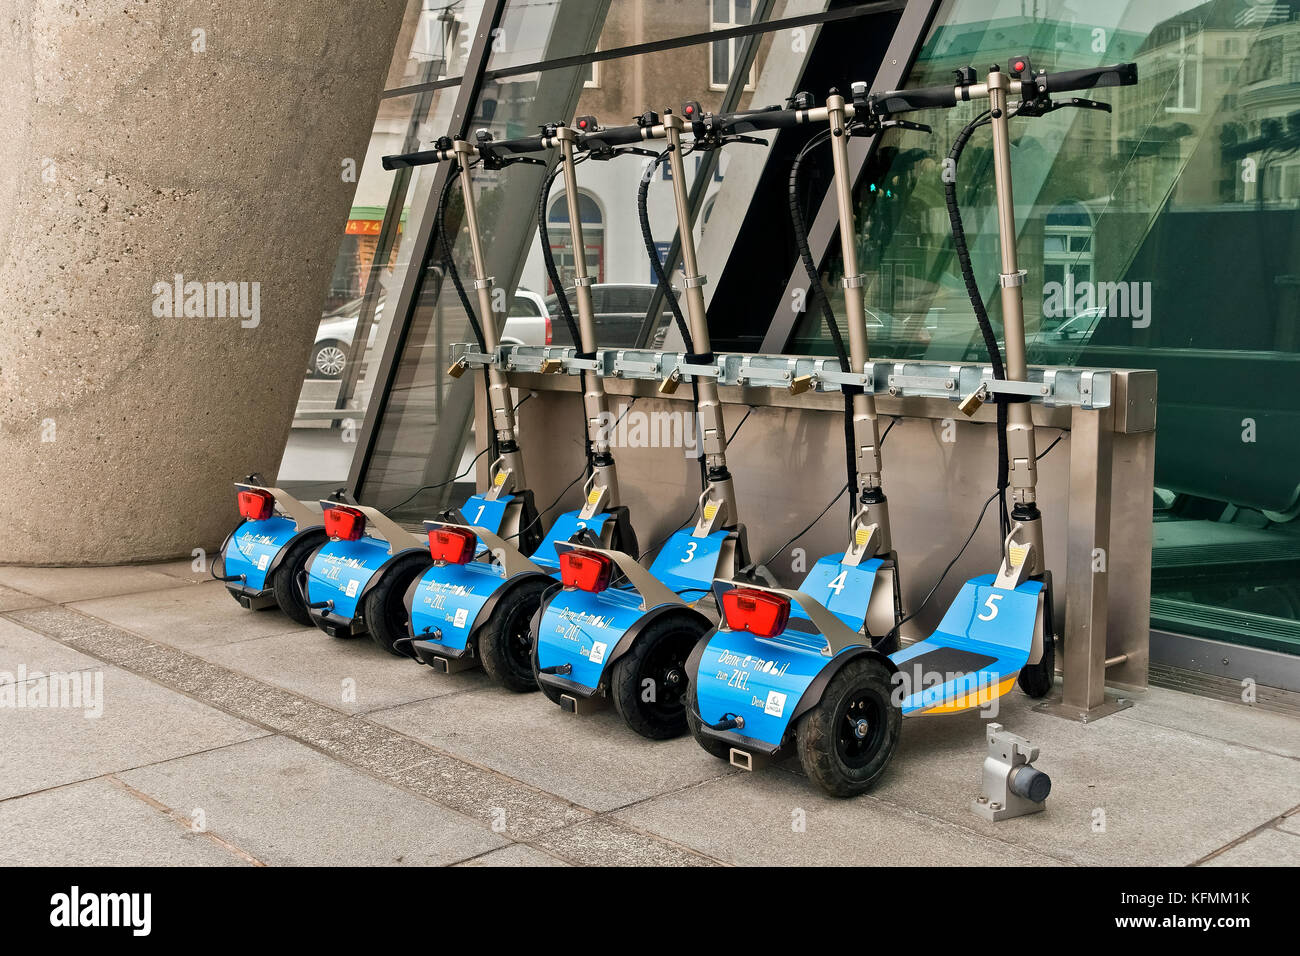 Compagnie d'UNICA scooters électriques jetables pousser garée à côté de l'édifice du siège social de la porte. Eco friendly. Vienne Vienne, Autriche, Europe Banque D'Images